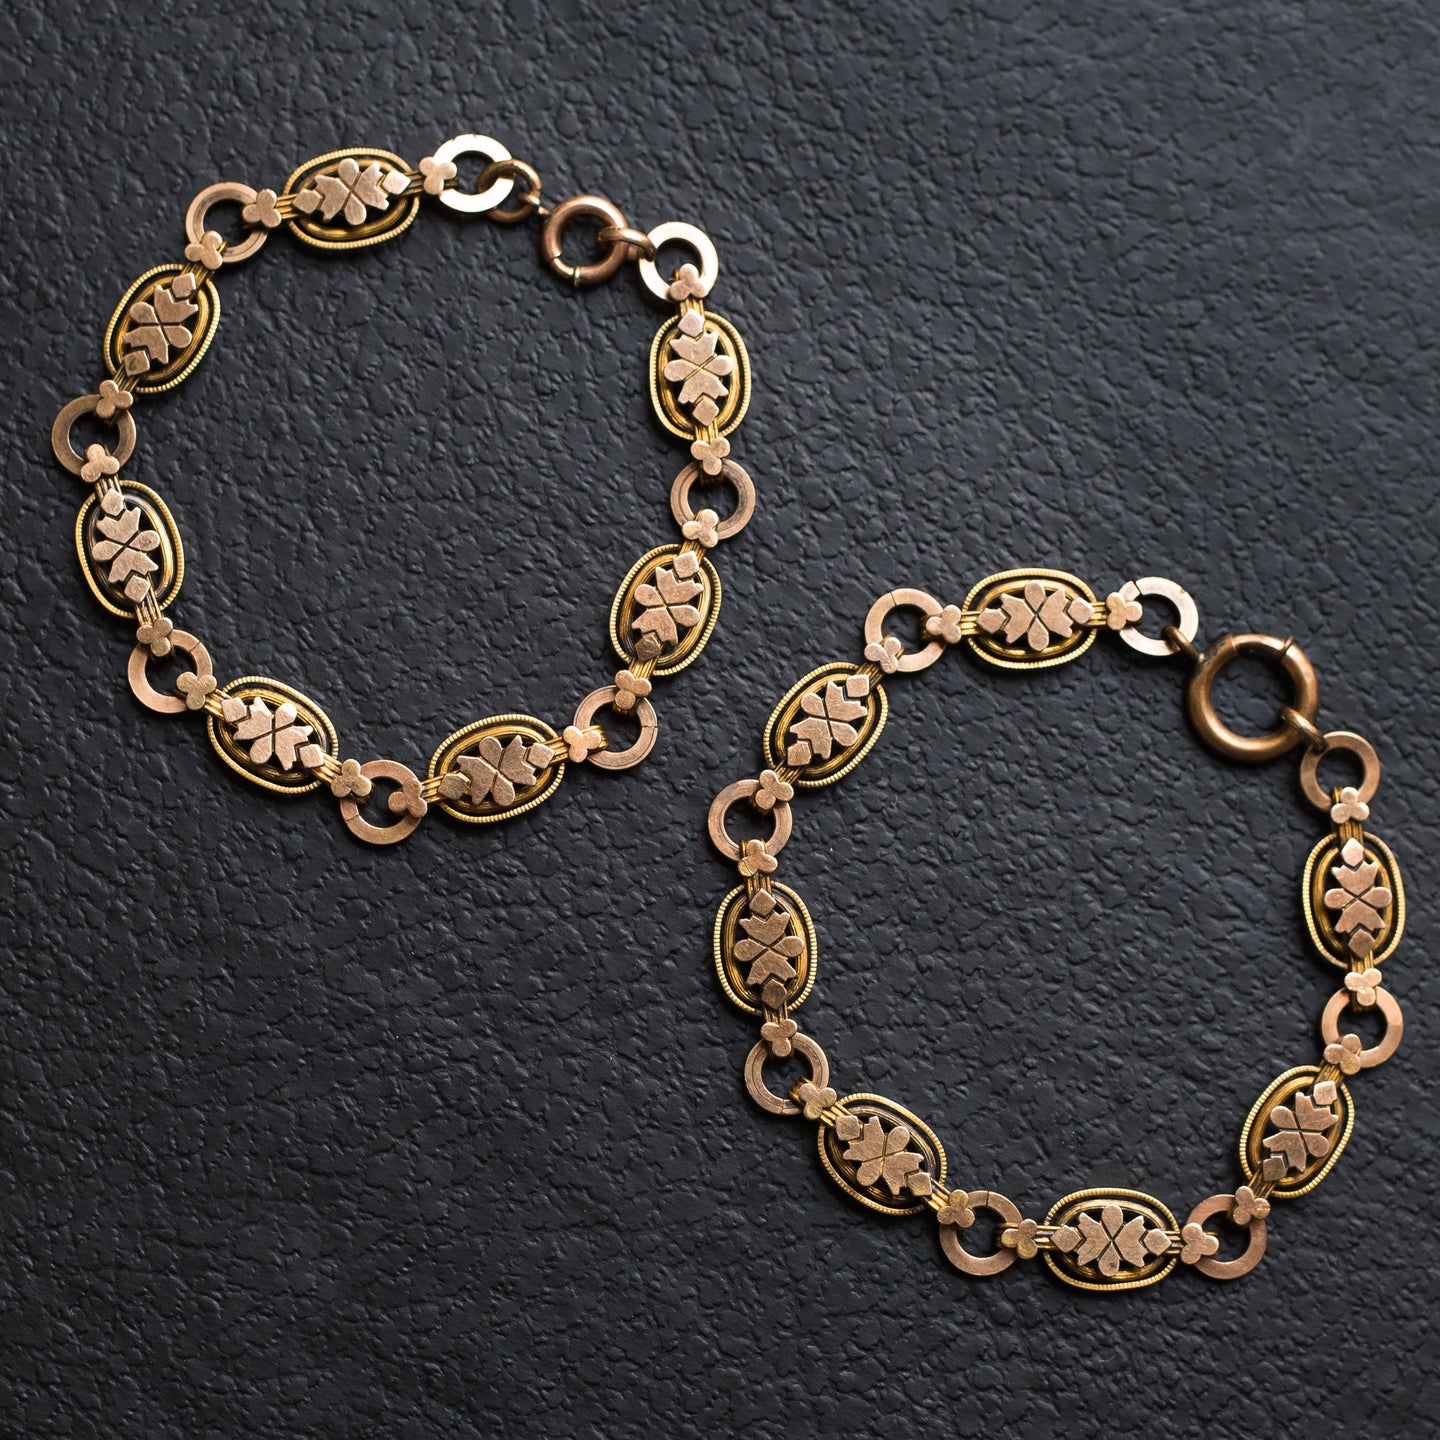 Rolled Gold Bracelets or Necklace c1890